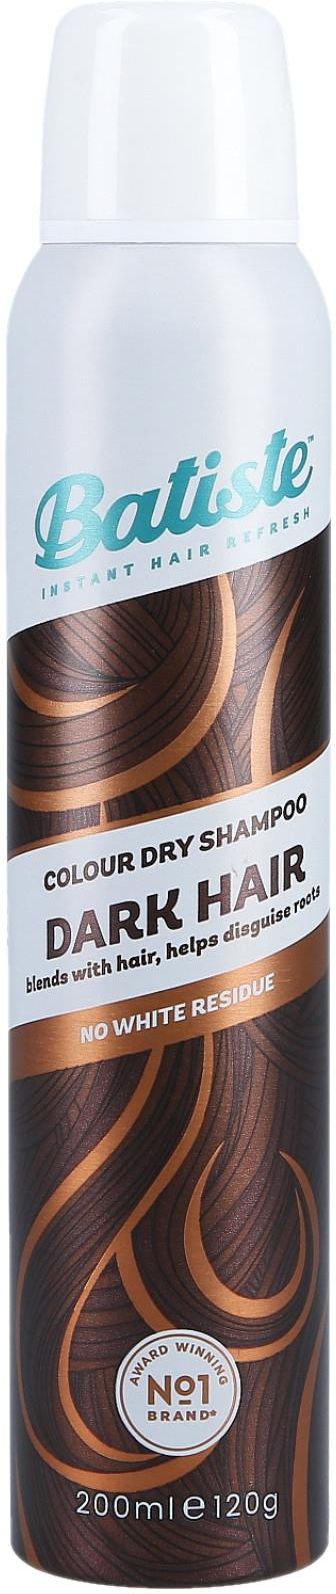 suchy szampon batiste czy niszczy włosy